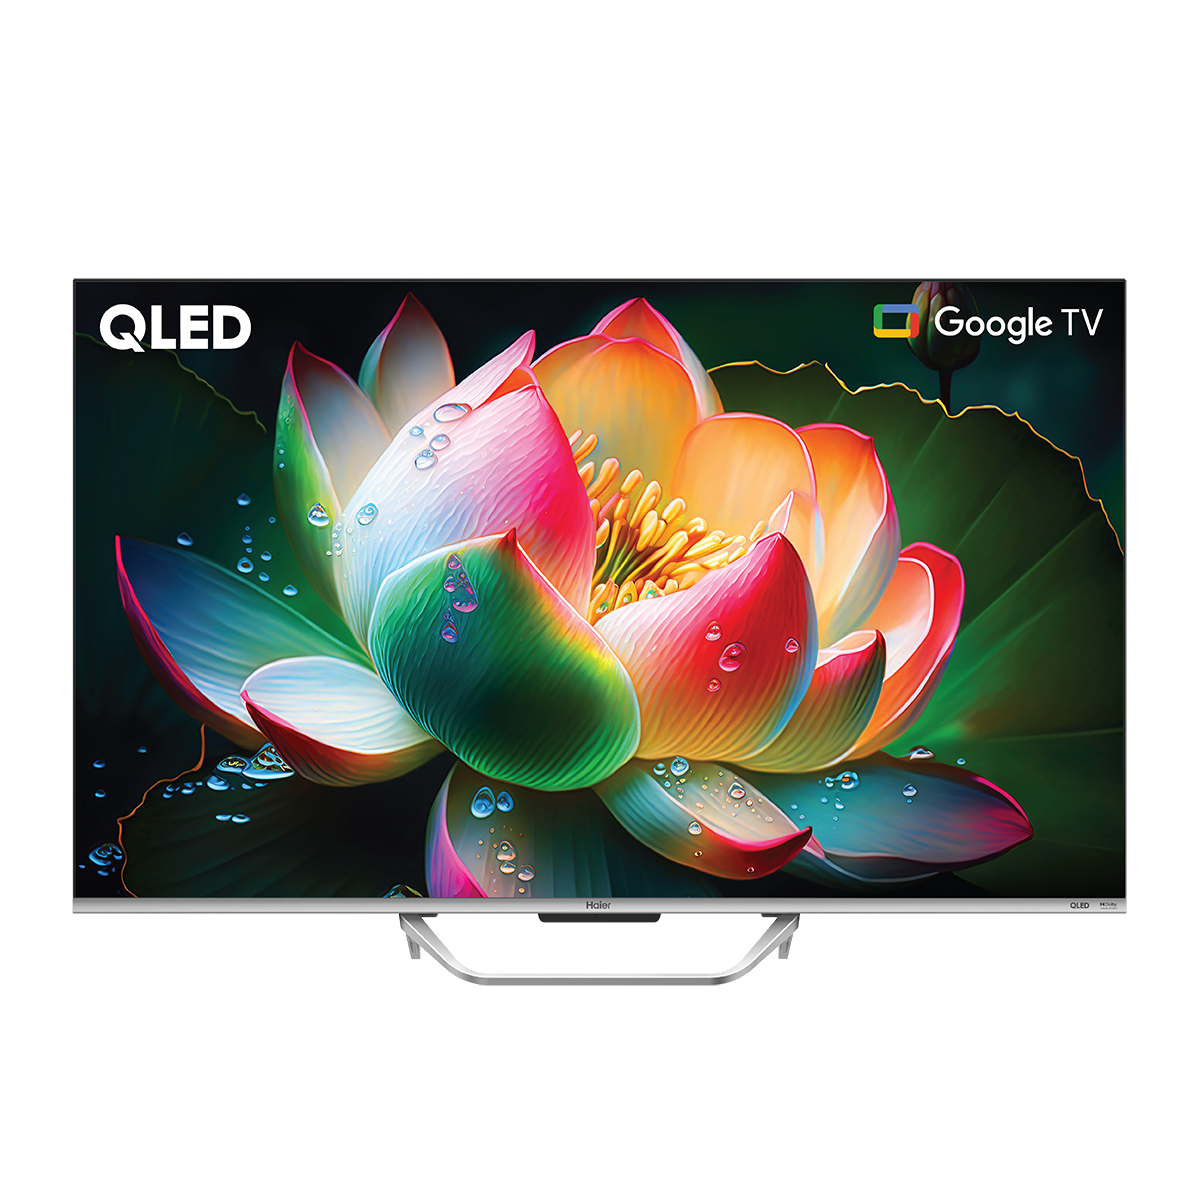 Haier LED 65" Smart - H65S800UX QLED Google TV